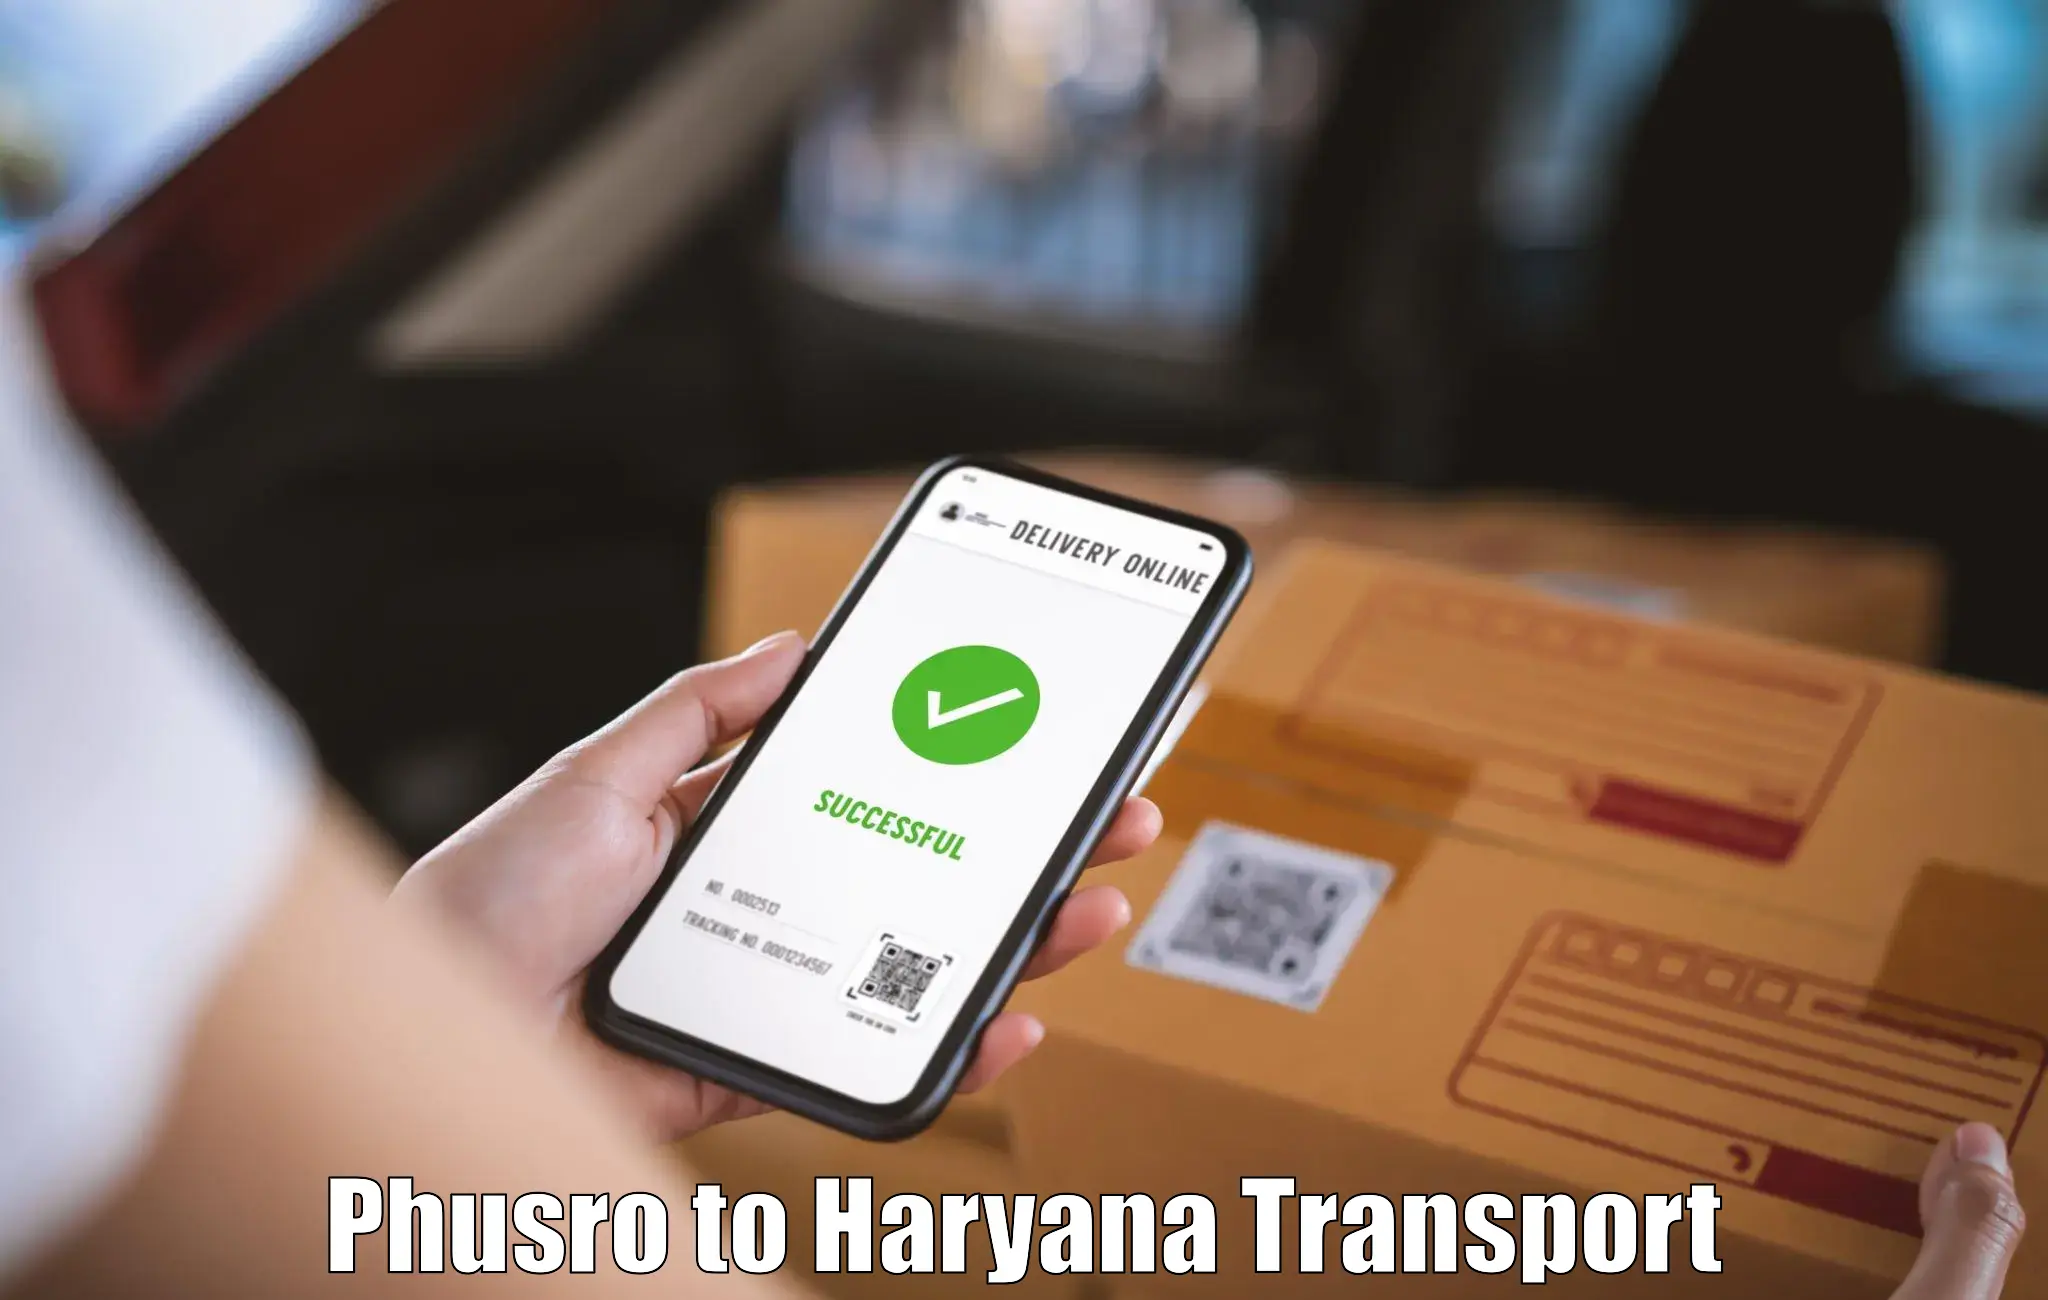 Commercial transport service Phusro to NIT Kurukshetra